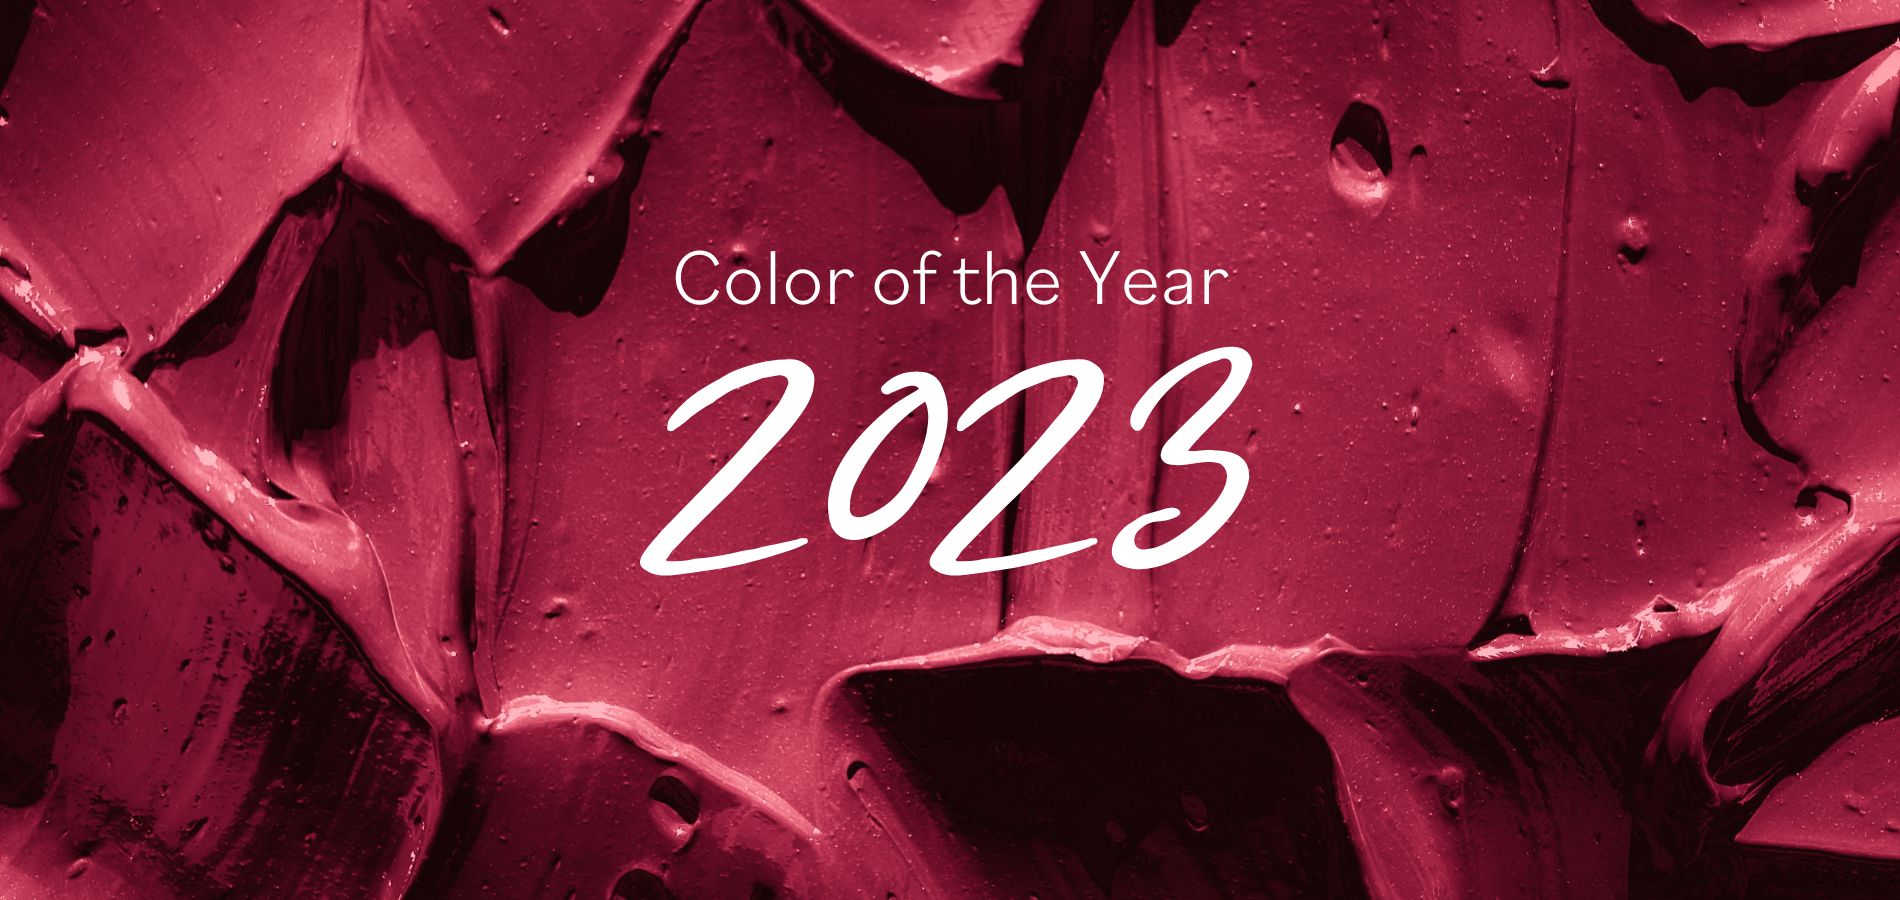 Couleur de l'année 2023 Power Berry - Image vedette du site Web